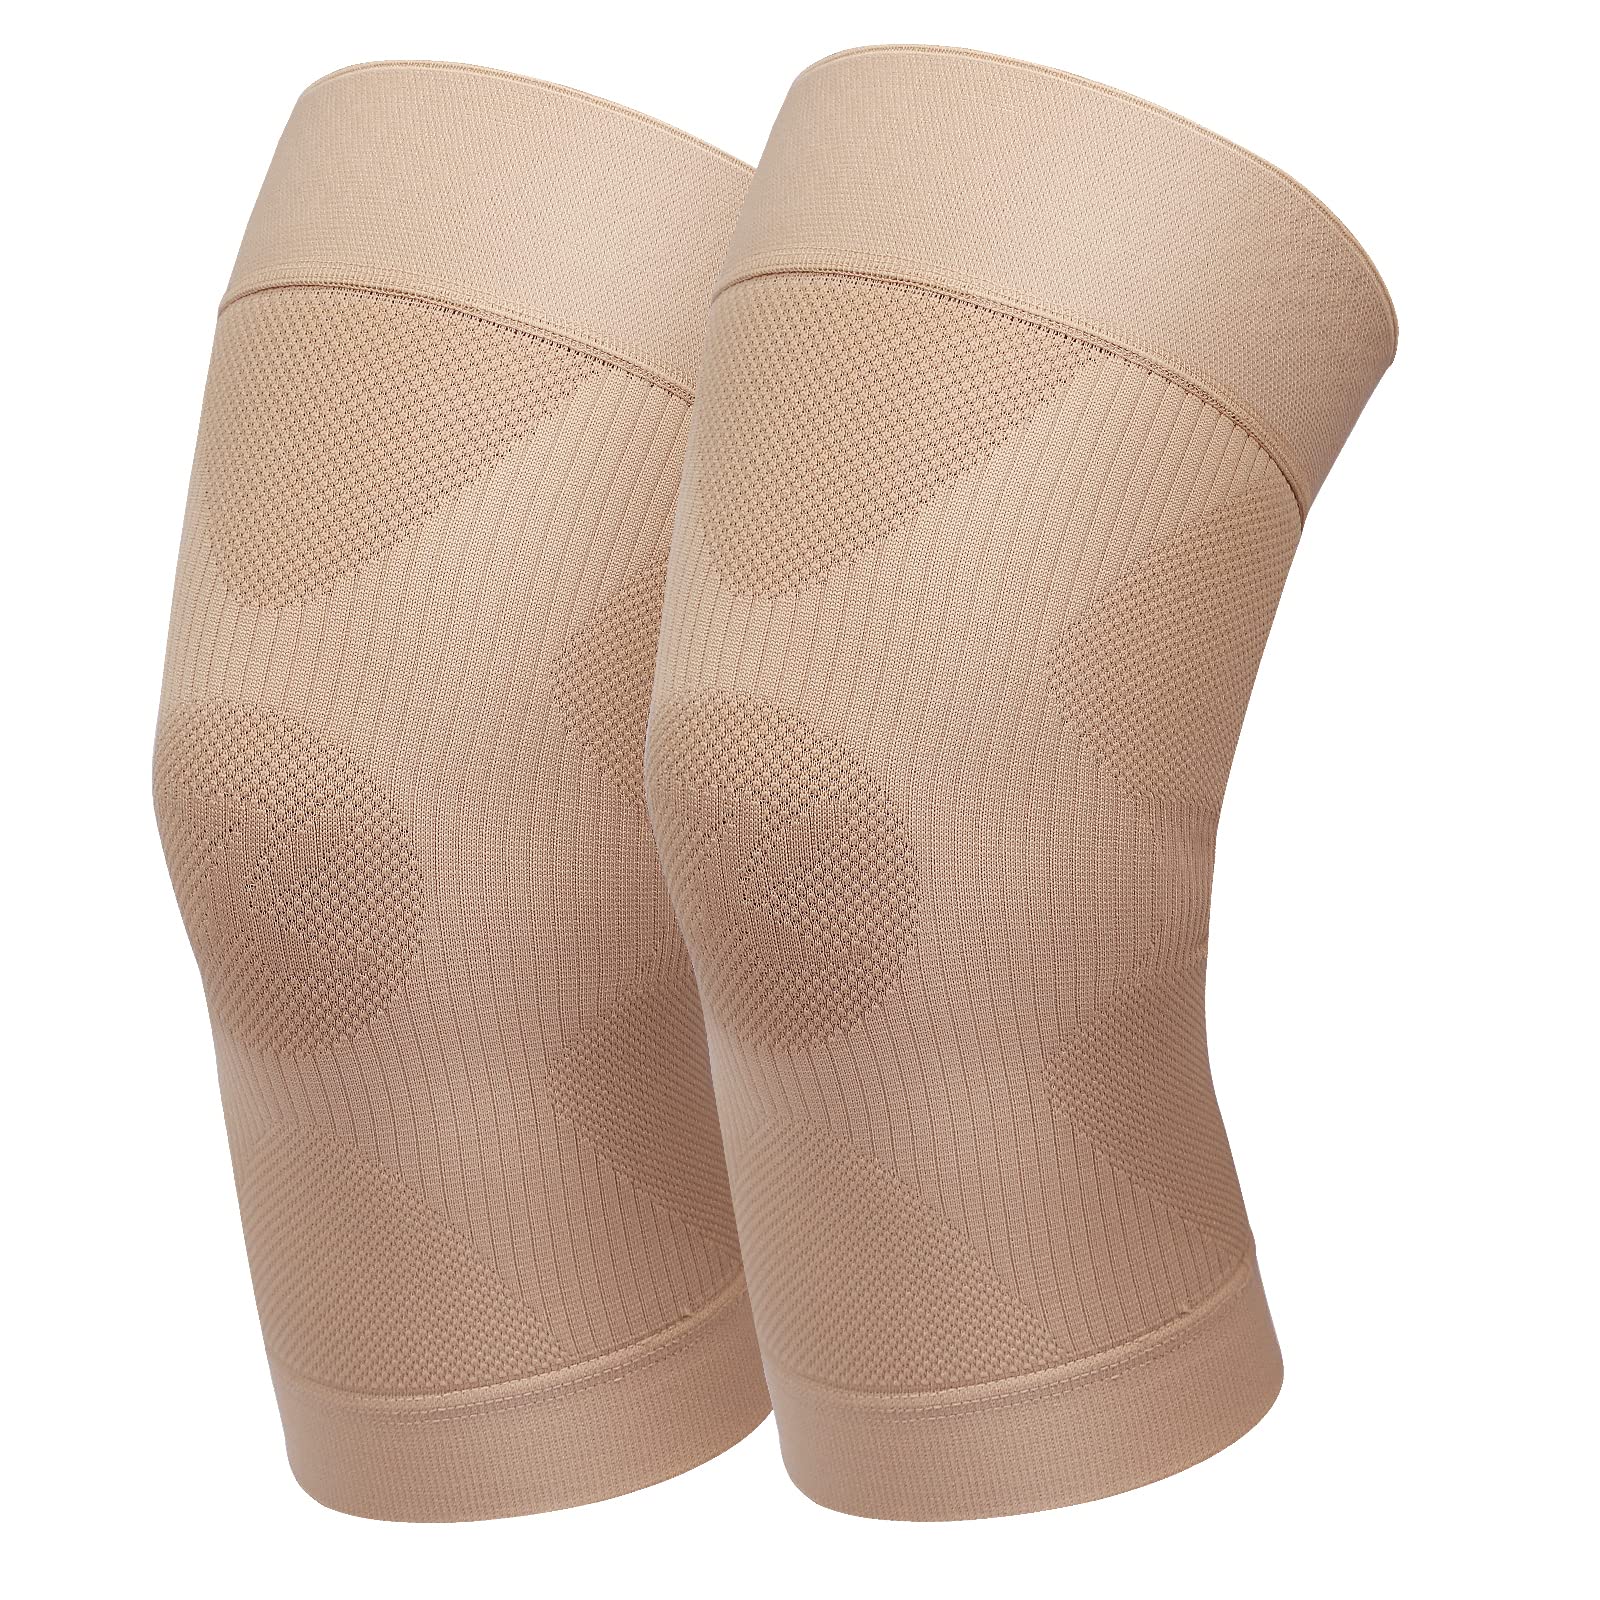  KEKING® Zipper Compression Socks for Men Women, Open